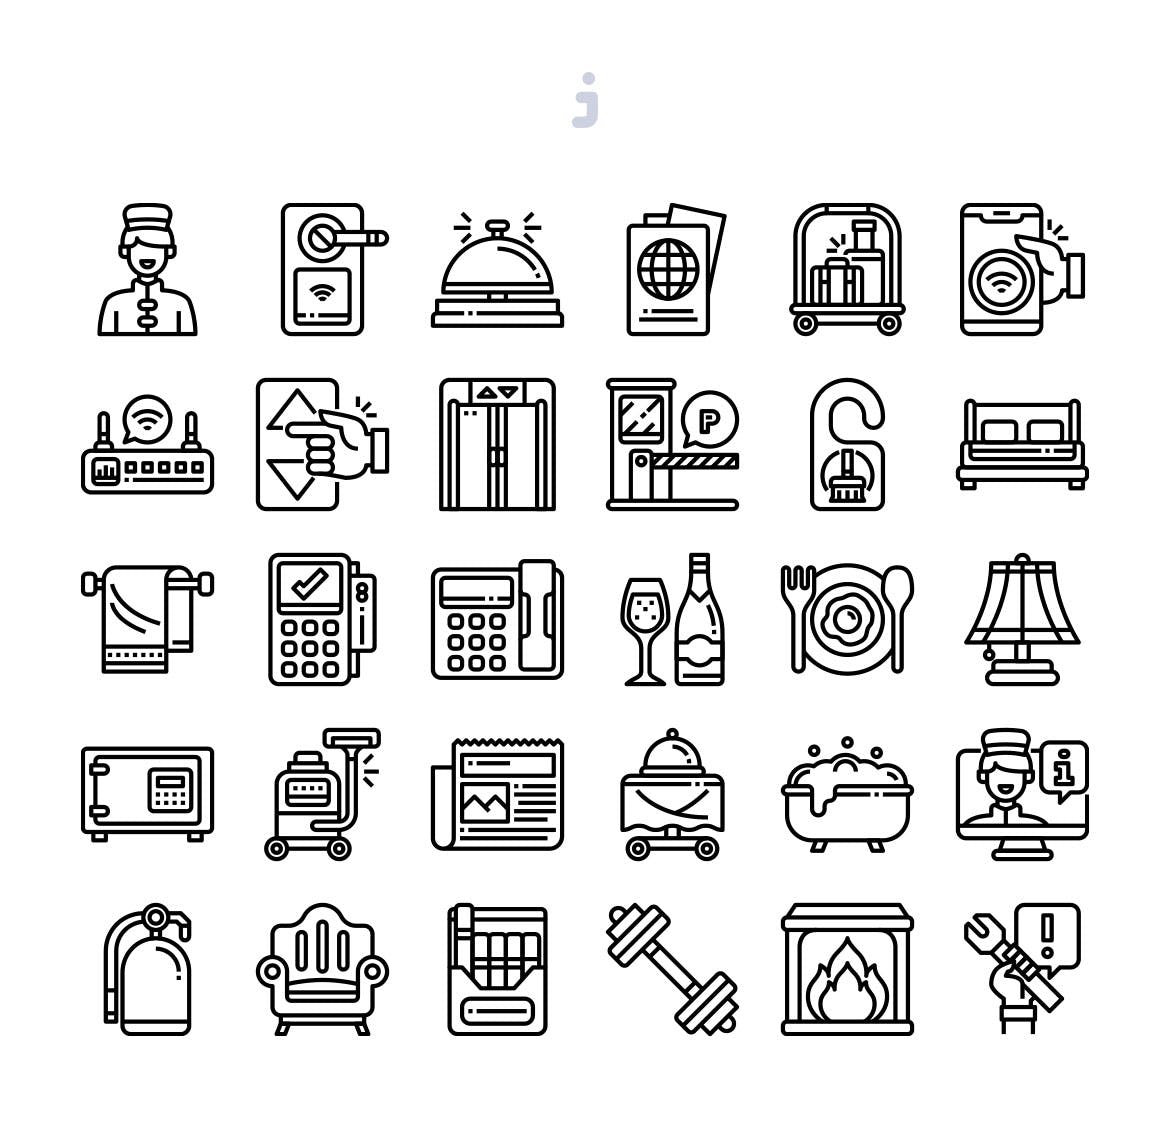 30枚医院医疗主题矢量素材库精选图标 30 Hotel Essentials Icons插图(2)